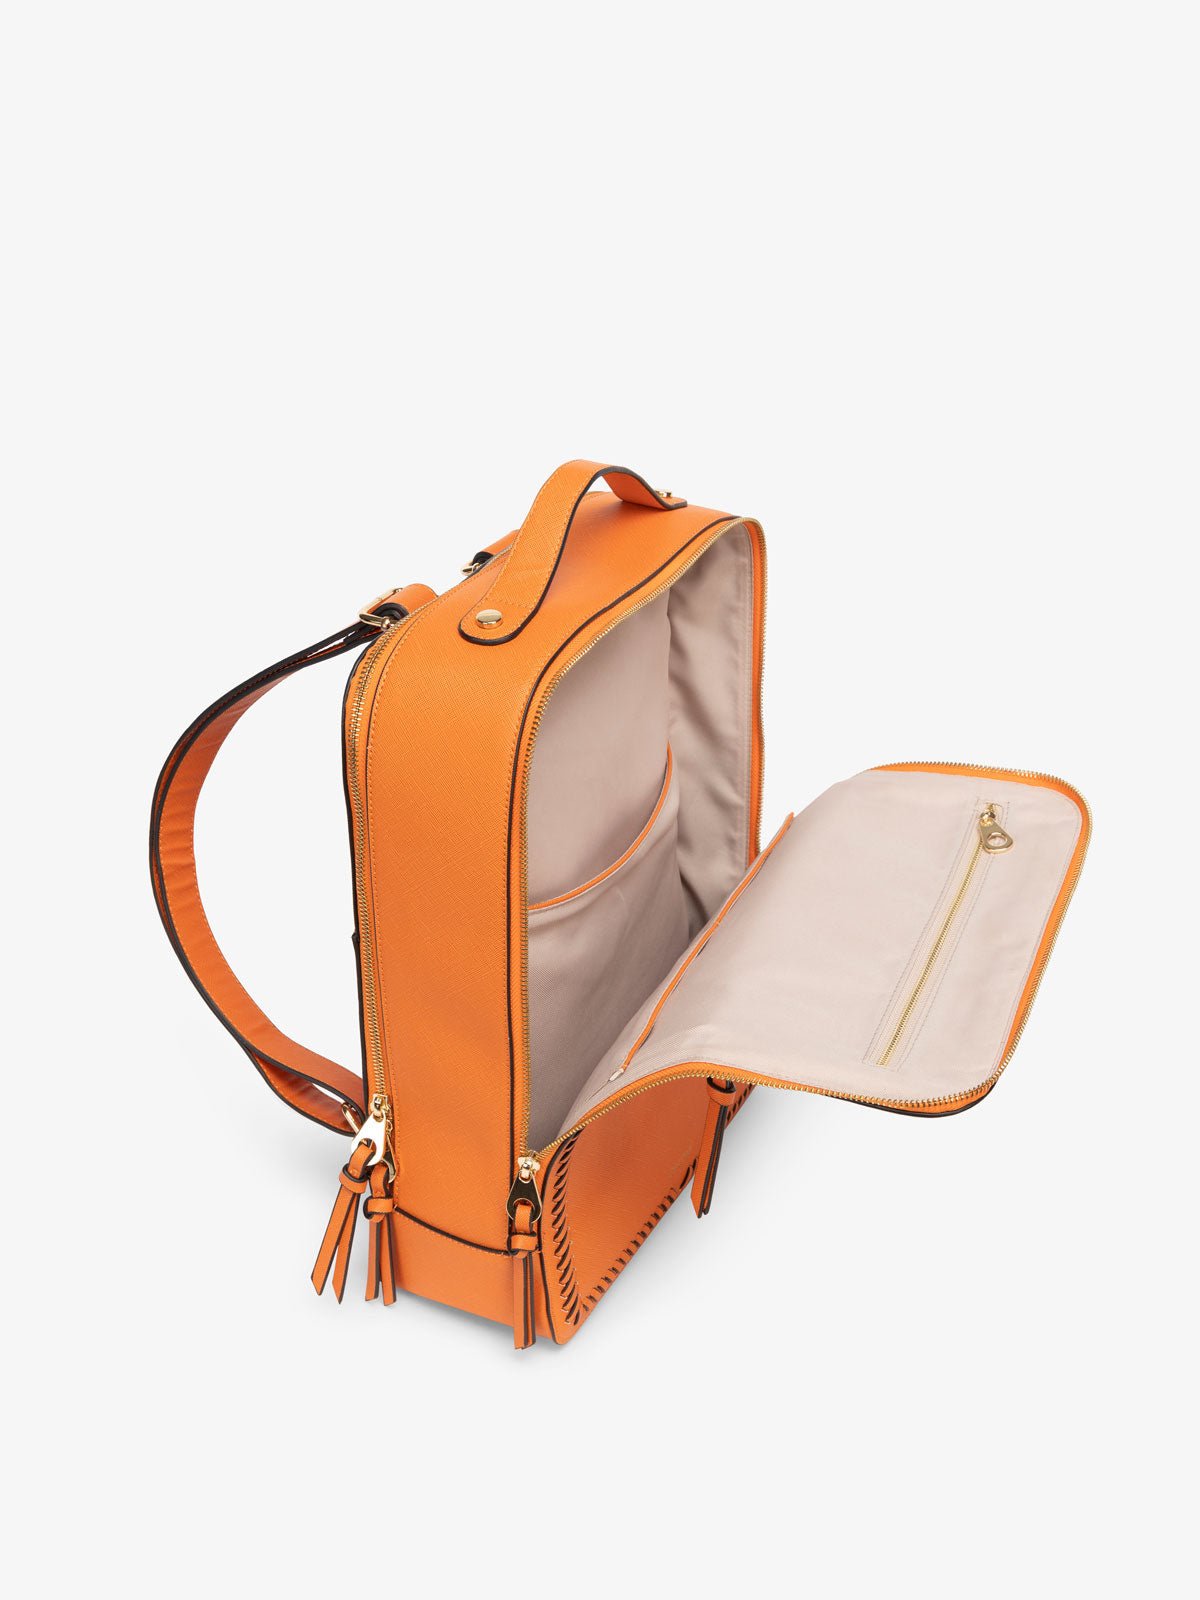 Kaya laptop backpack top view in orange papaya